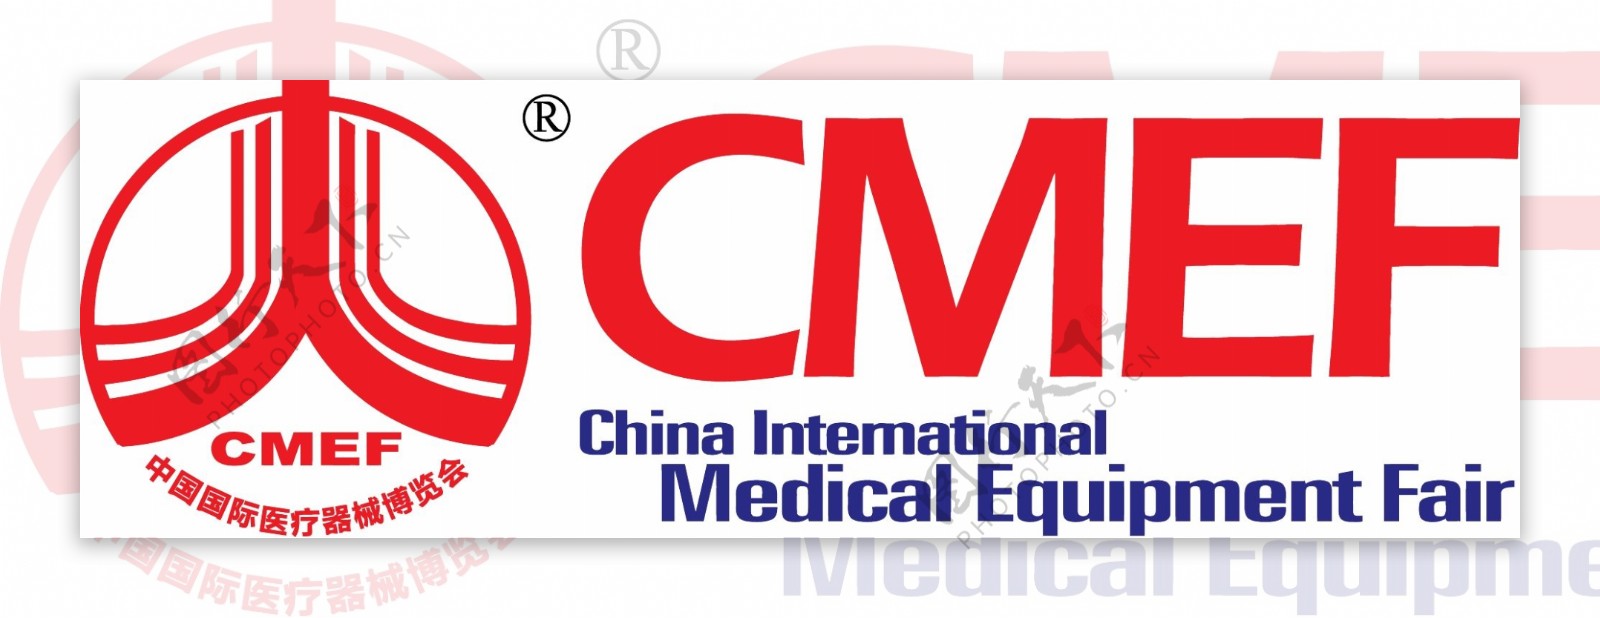 中国国际医疗器械博览会